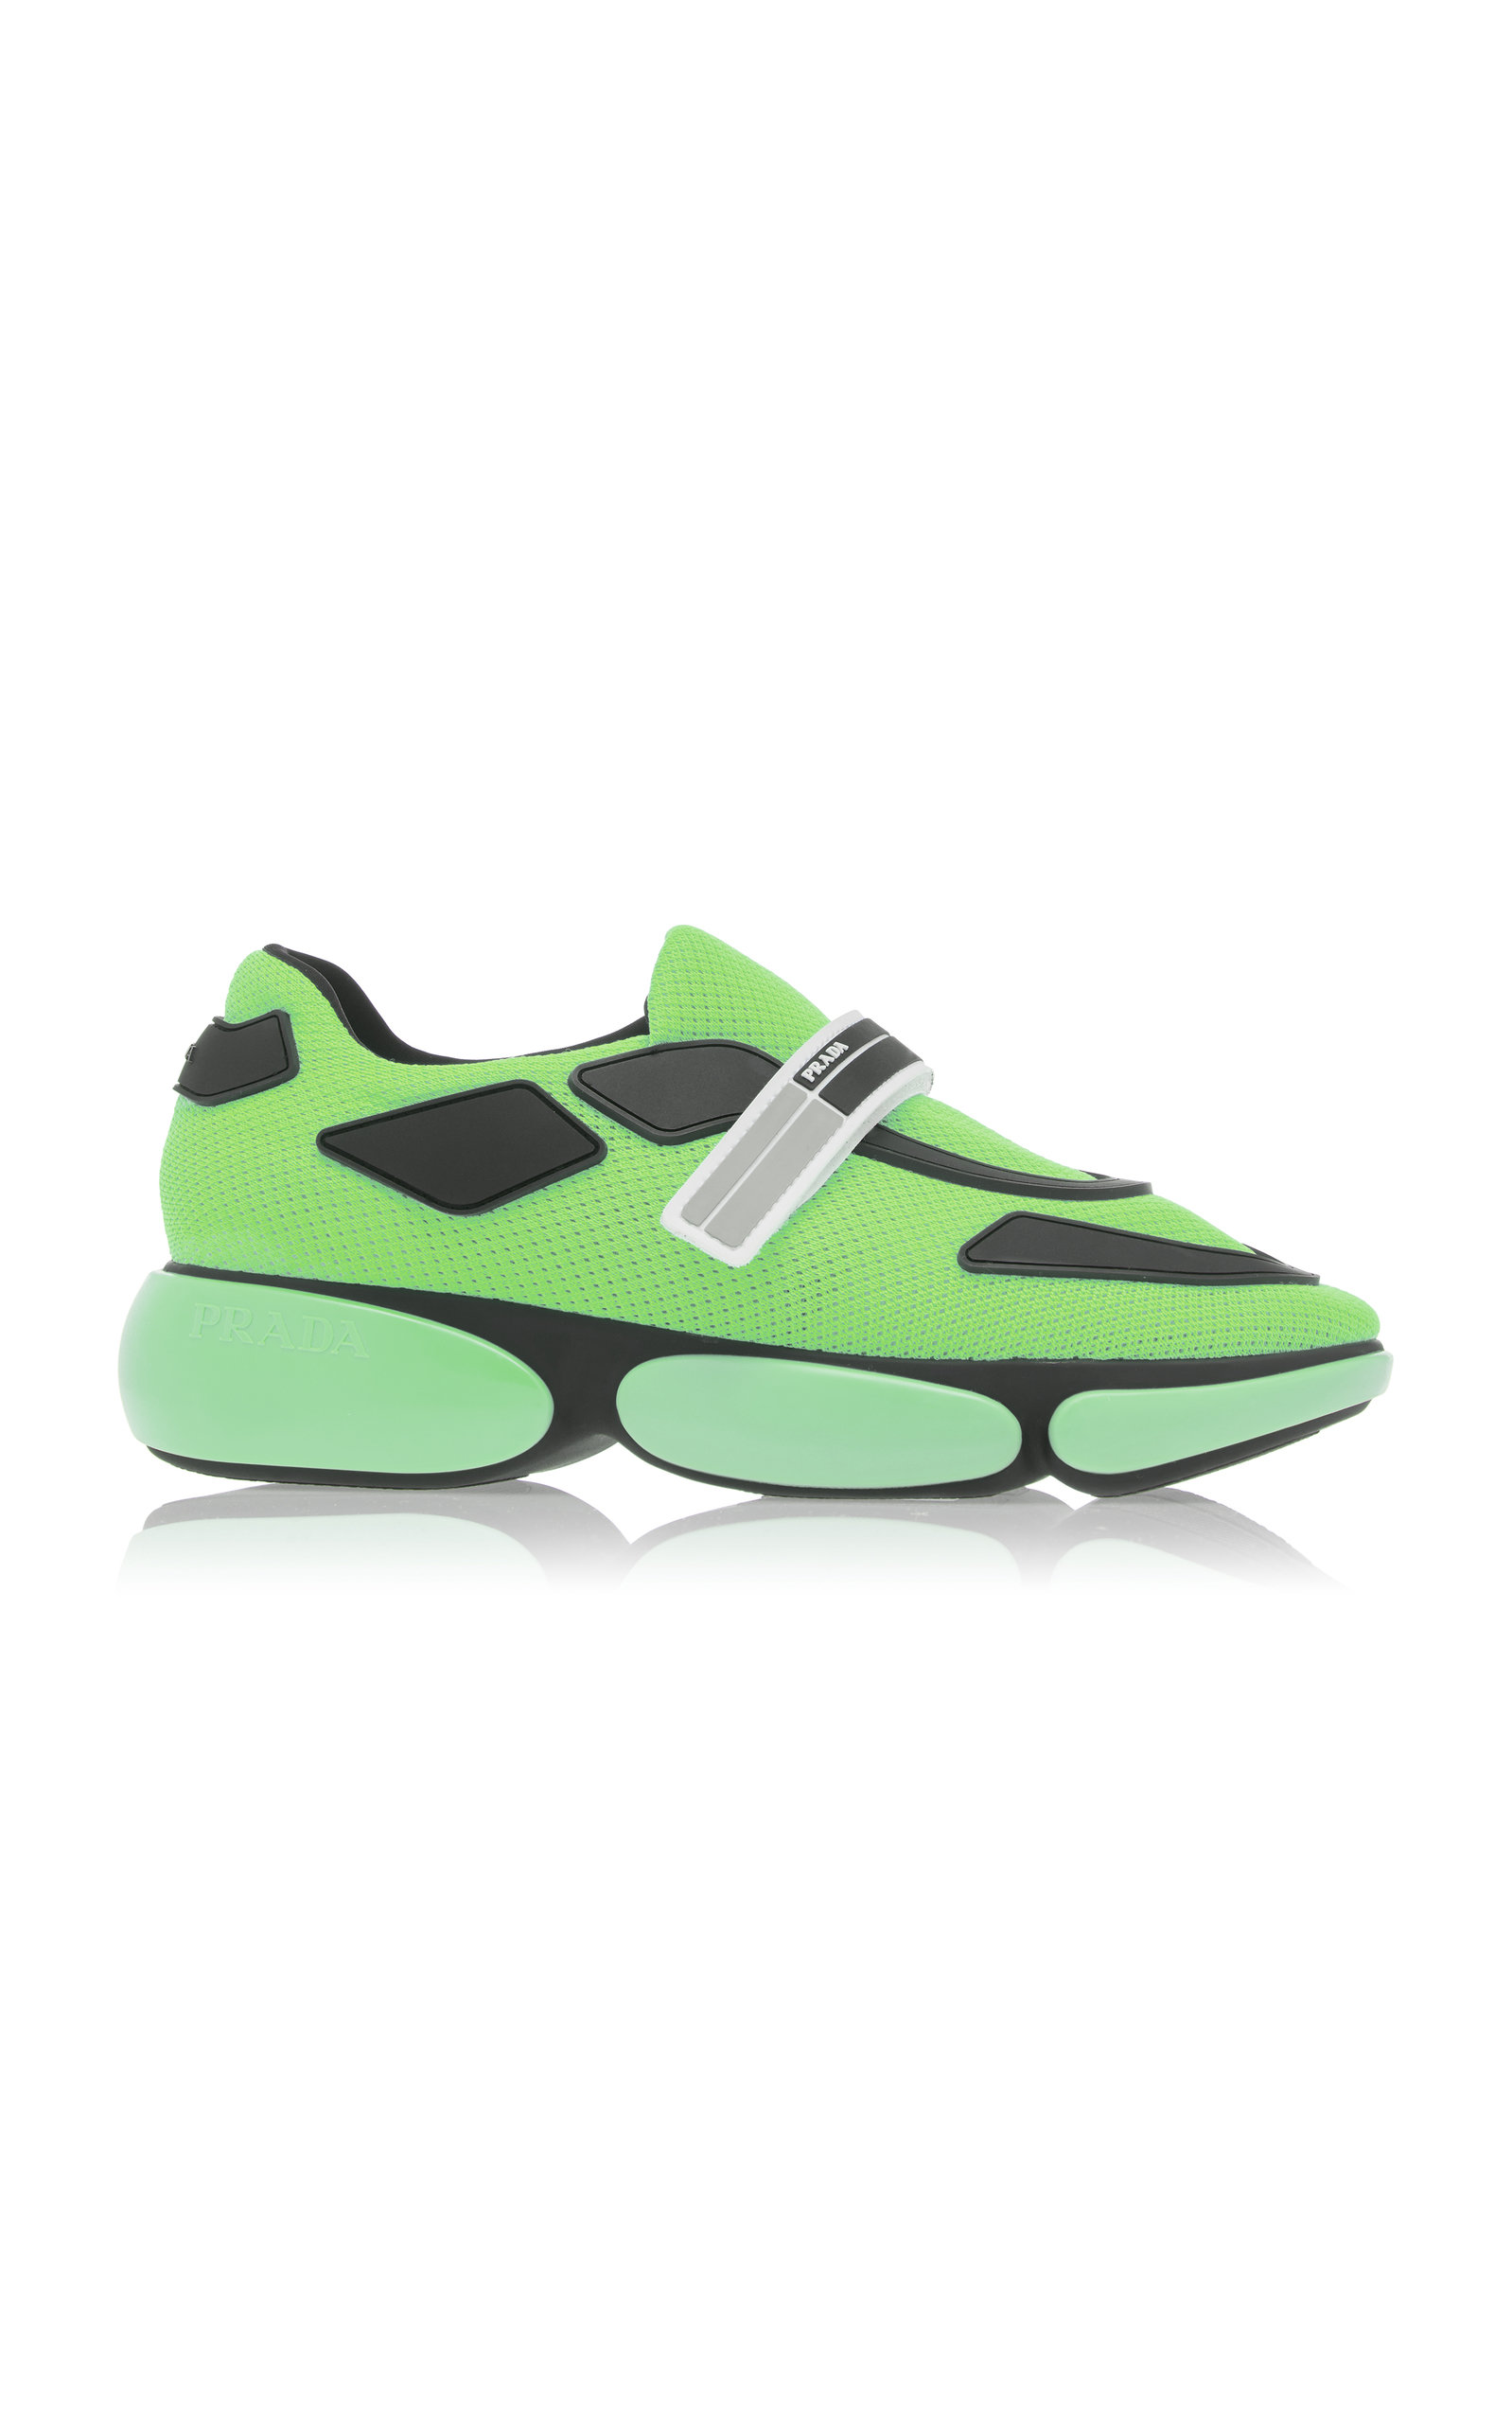 prada green sneakers